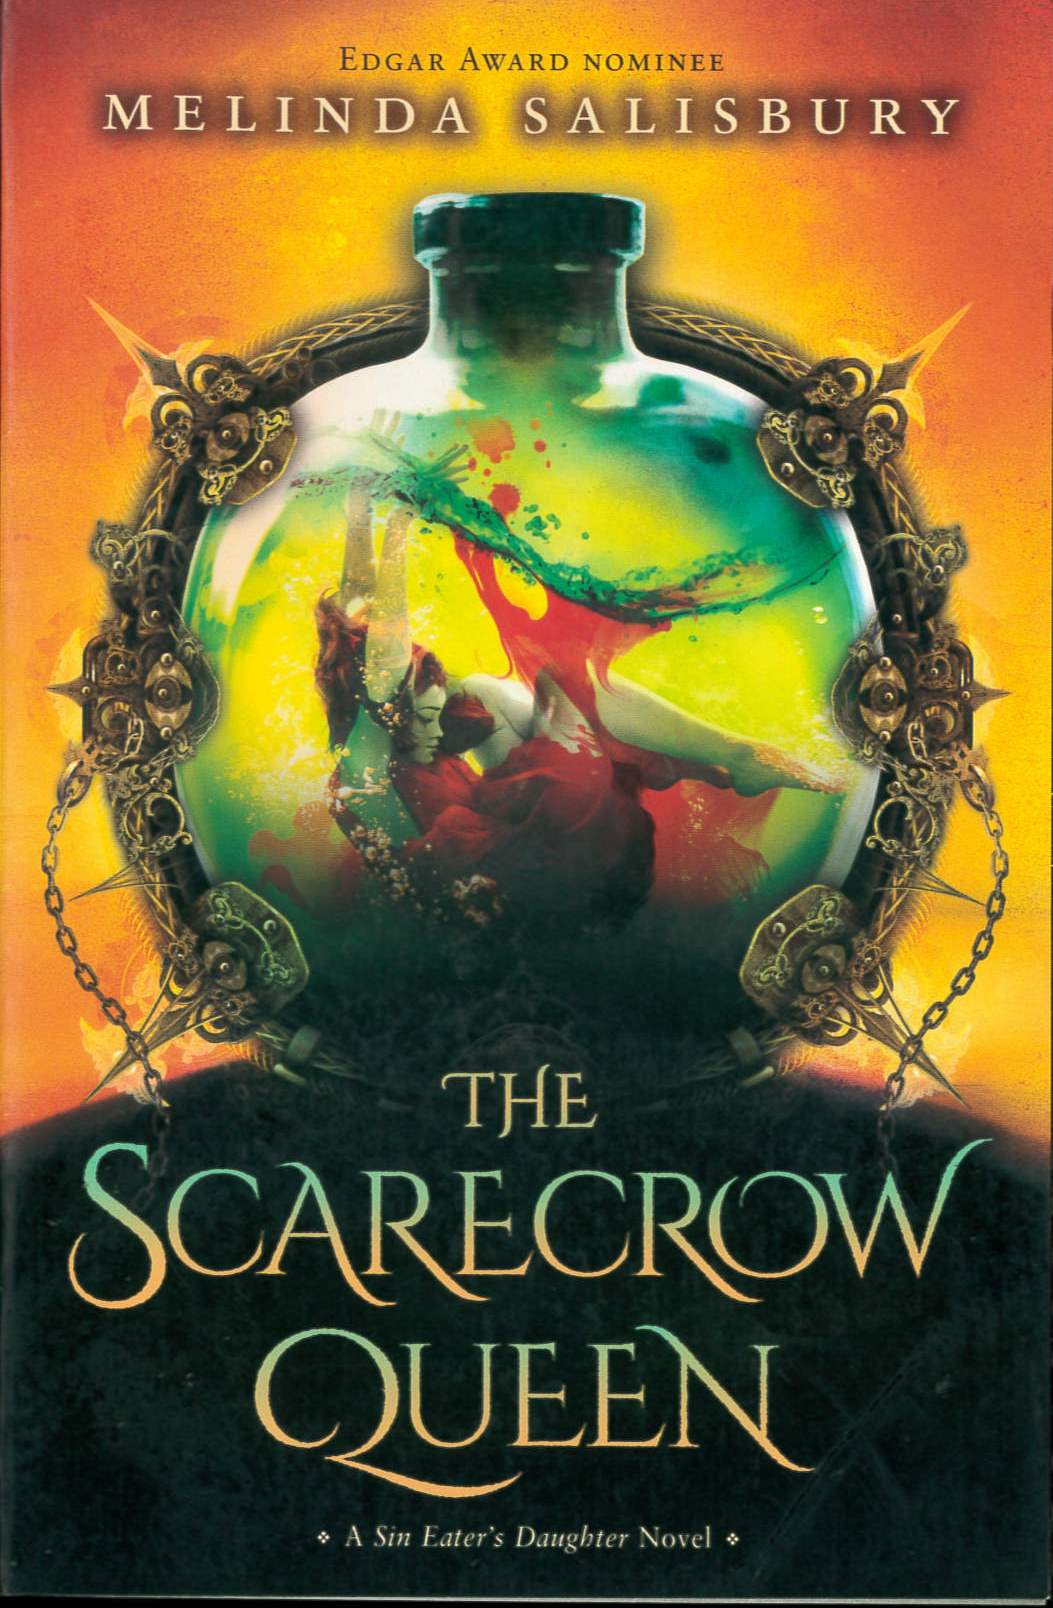 The scarecrow queen /